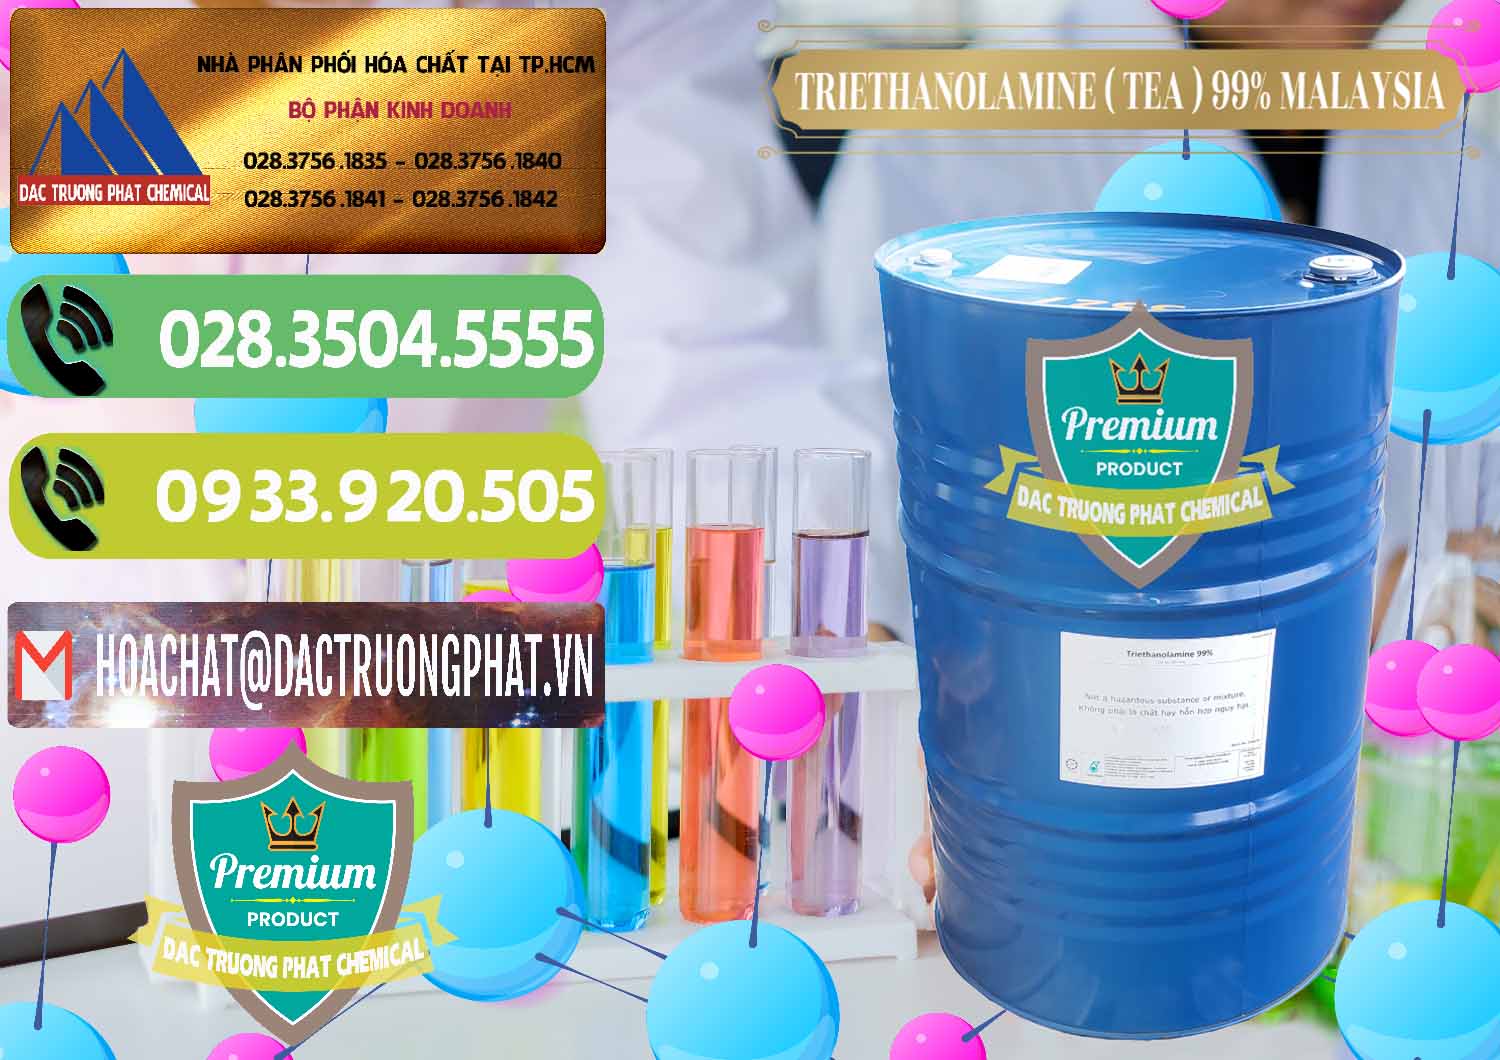 Công ty kinh doanh & bán TEA - Triethanolamine 99% Mã Lai Malaysia - 0323 - Phân phối & bán hóa chất tại TP.HCM - hoachatmientay.vn